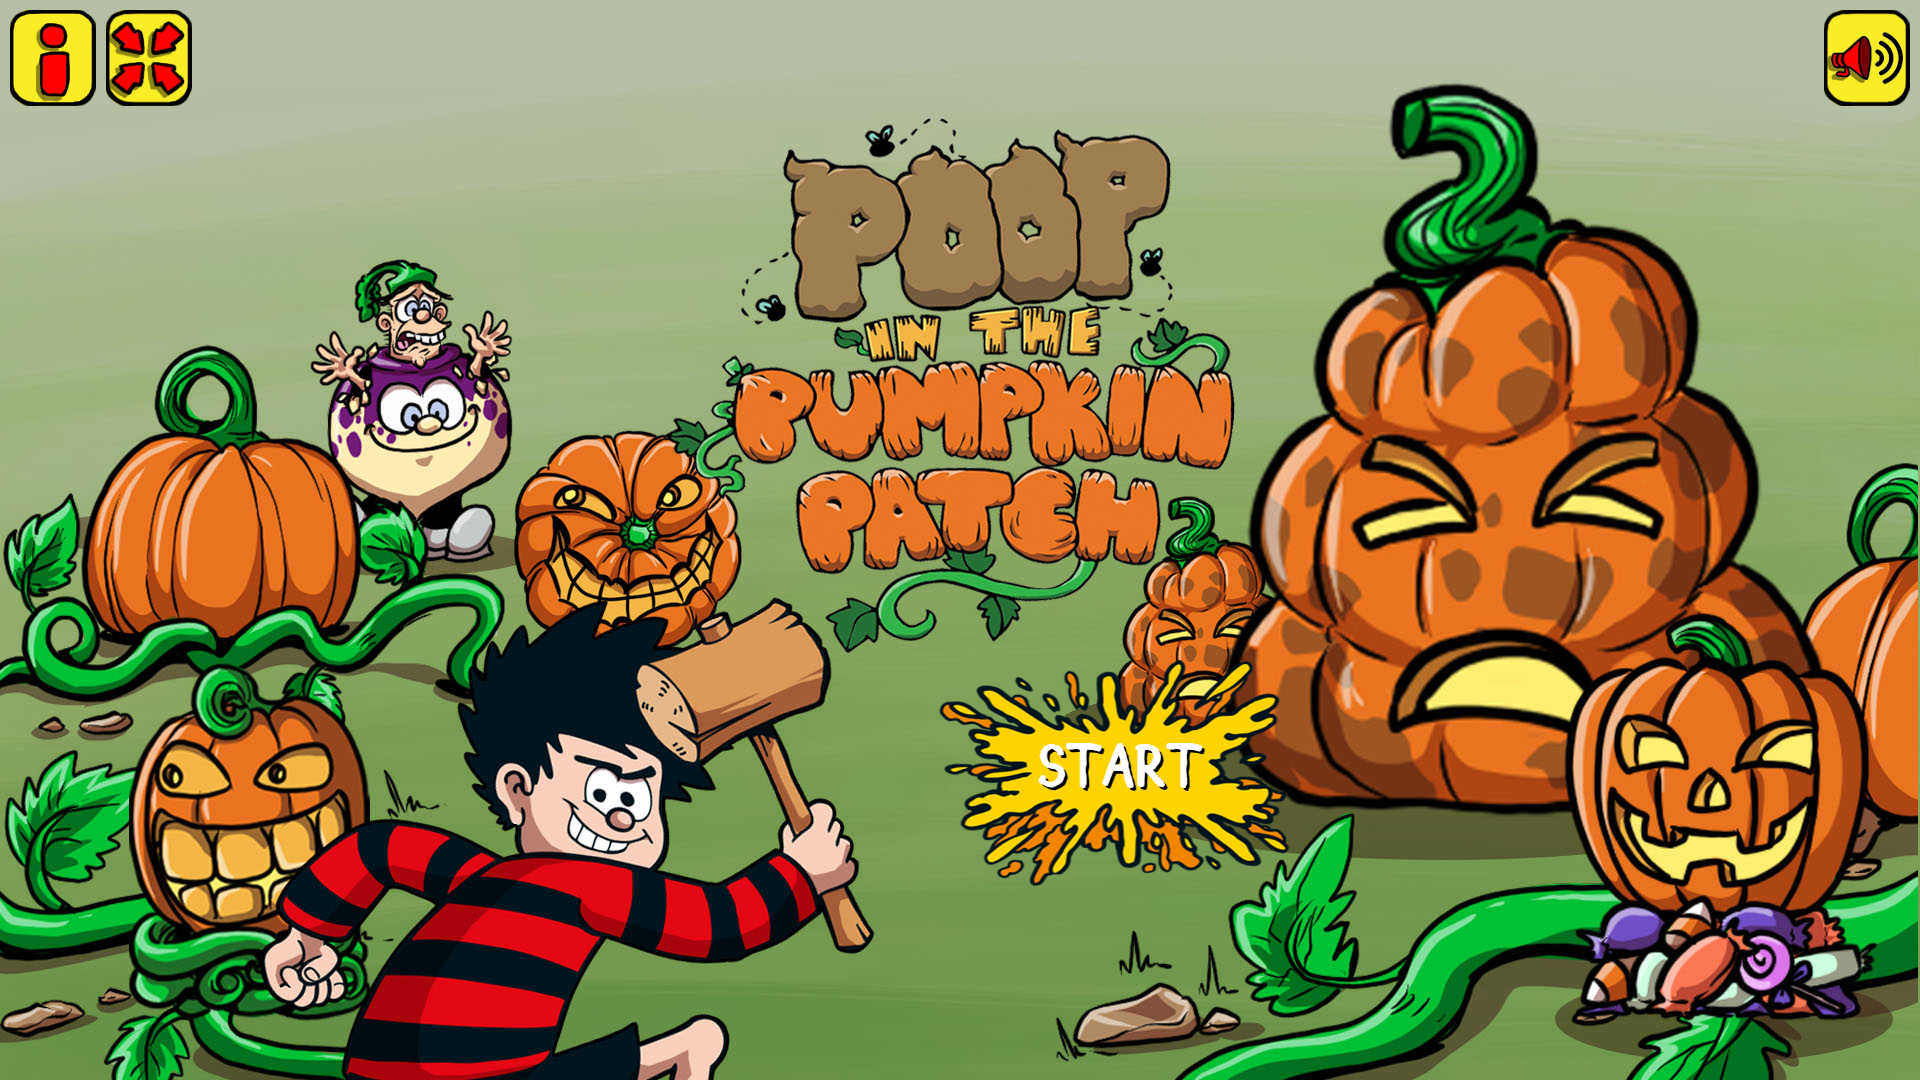 Poop in the Pumpkin Patch!